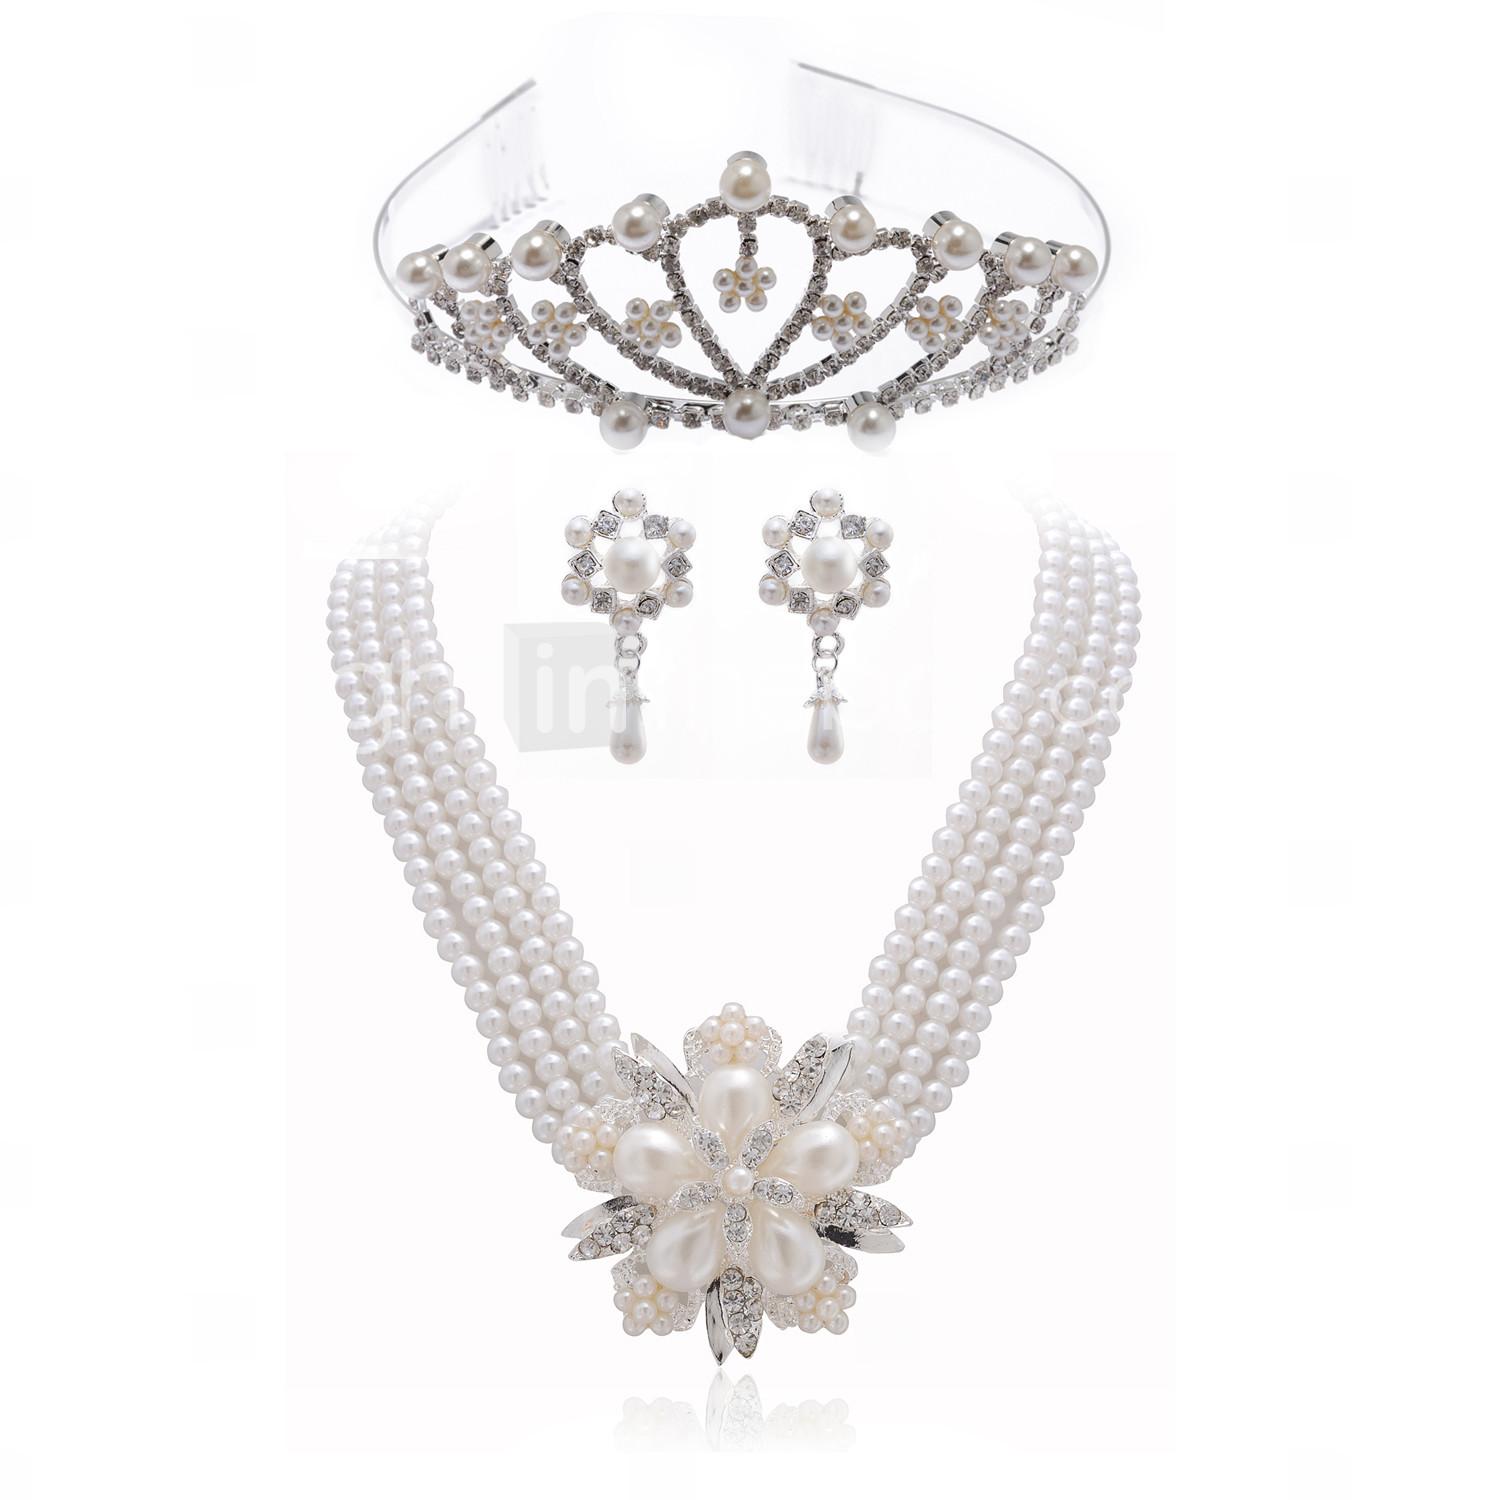 Foto magnífico cristales claros con el conjunto de joyas de imitación de perlas, incluyendo collares, aretes y diadema